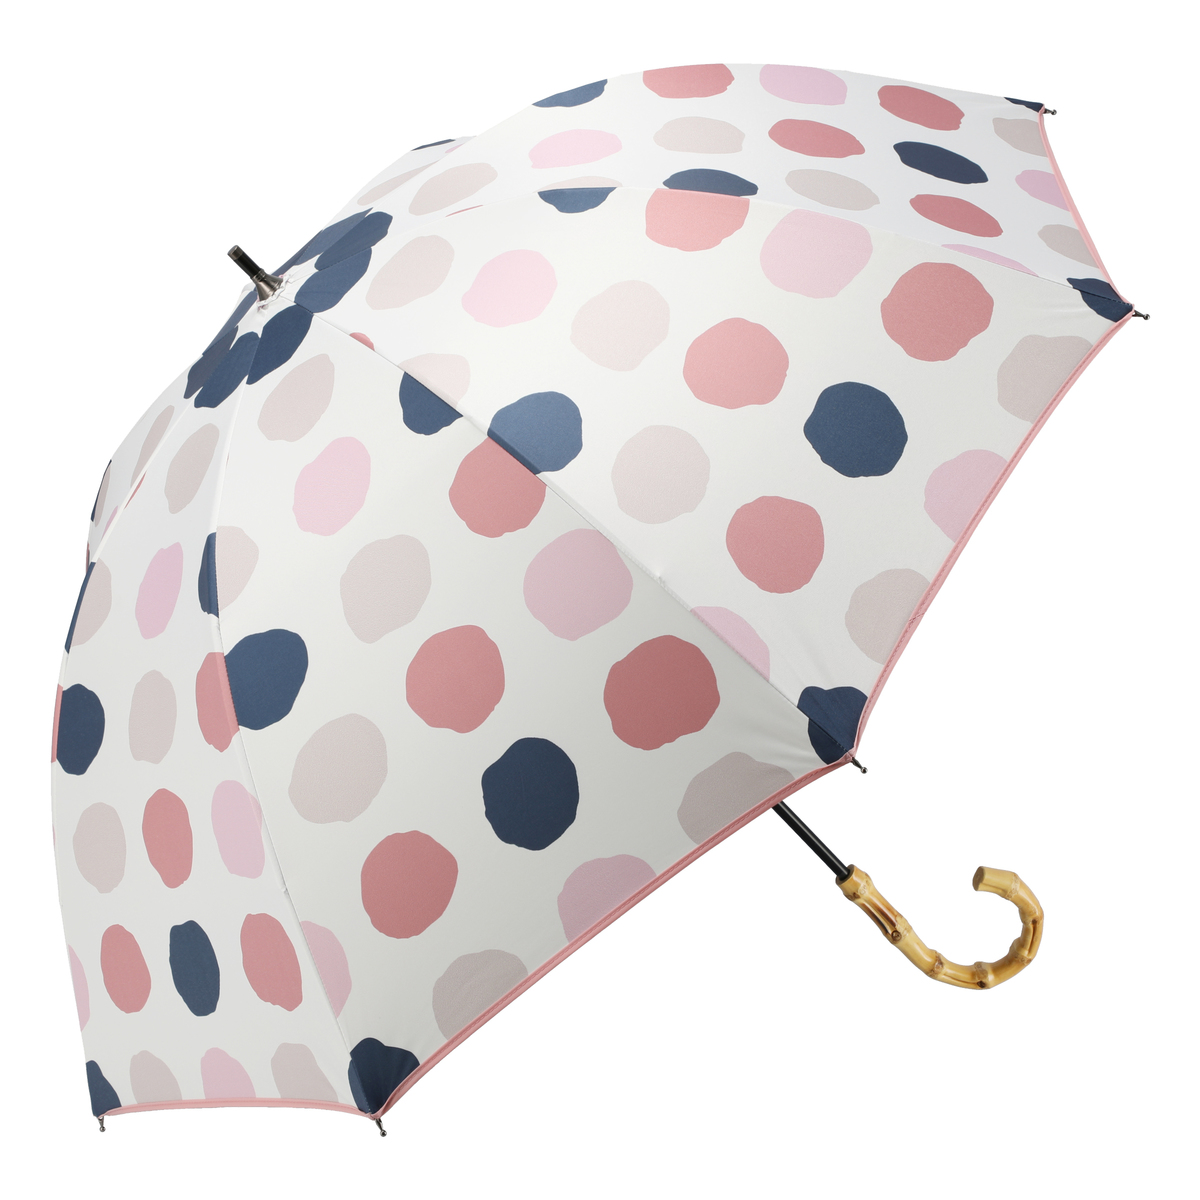  ルナジュメール UV+1級遮光+晴雨兼用 水玉ショート傘  オフホワイト